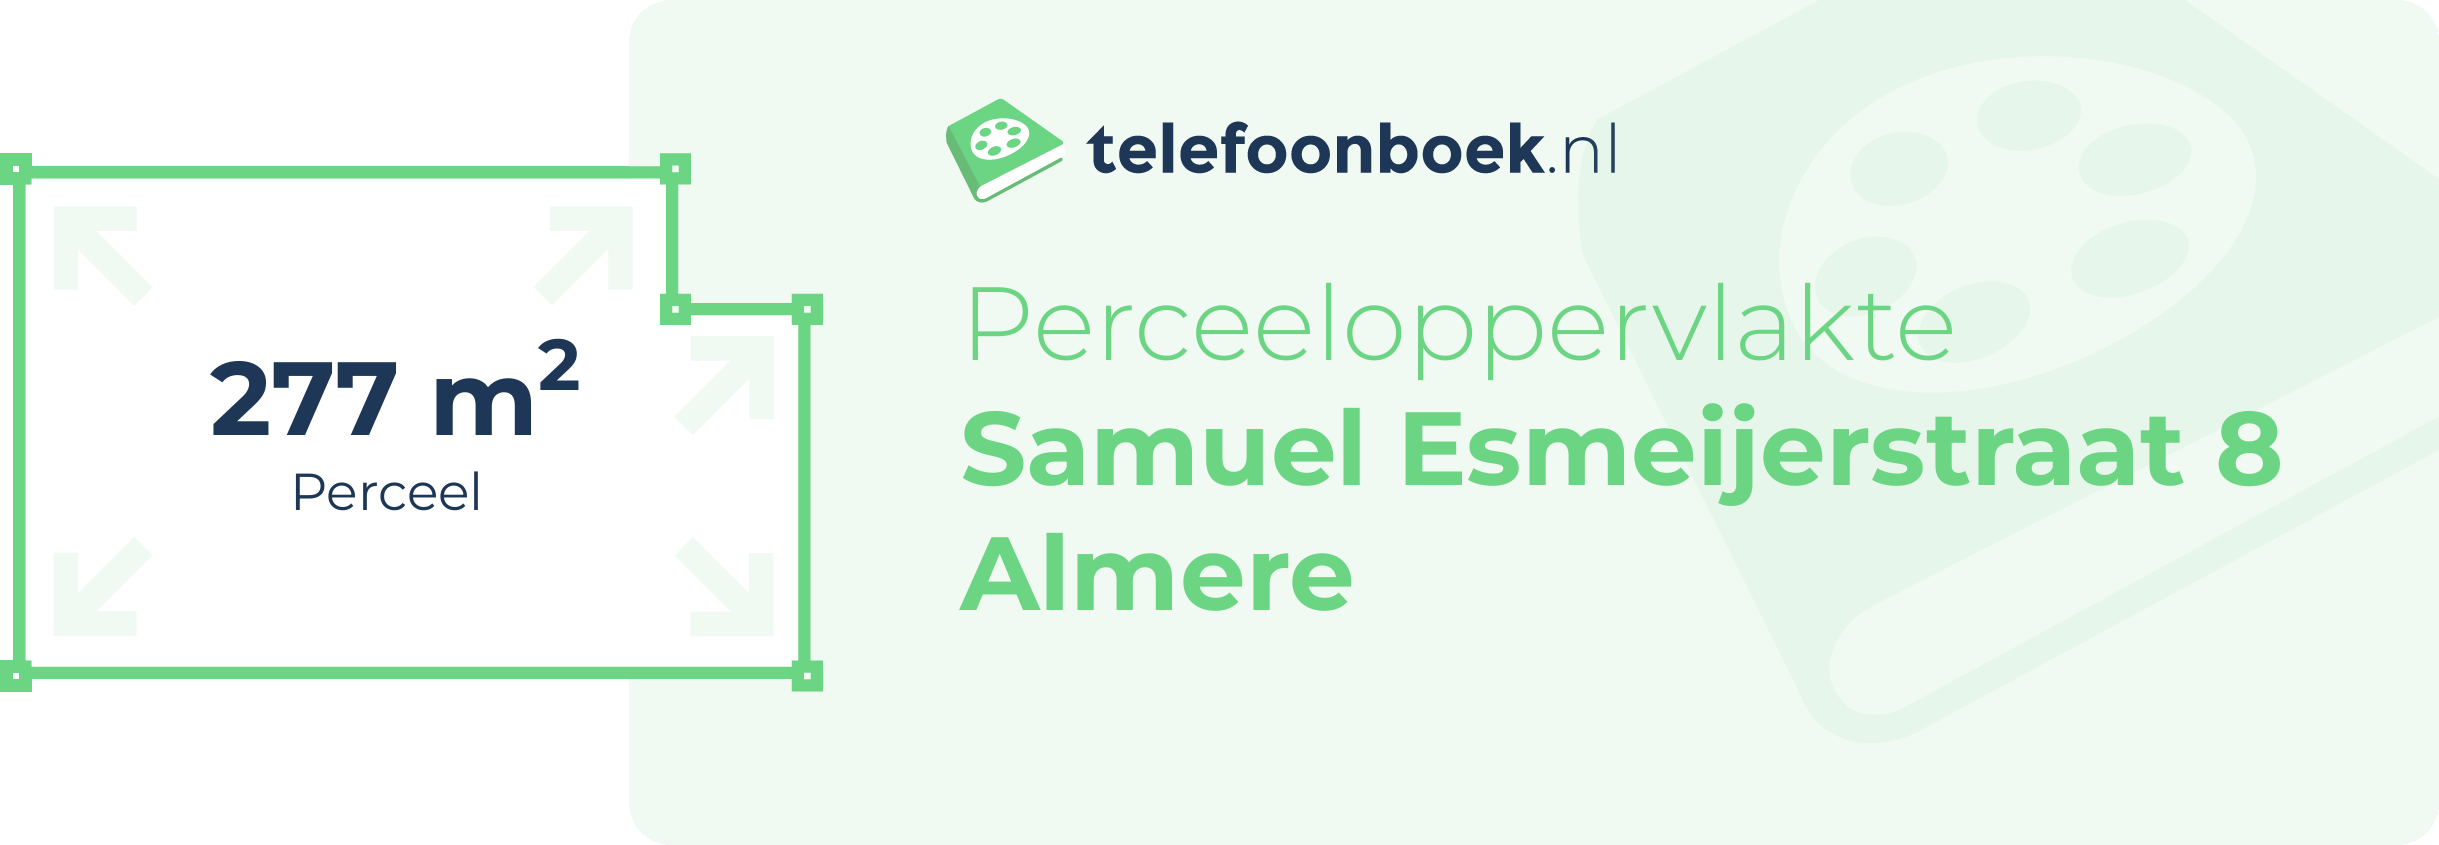 Perceeloppervlakte Samuel Esmeijerstraat 8 Almere